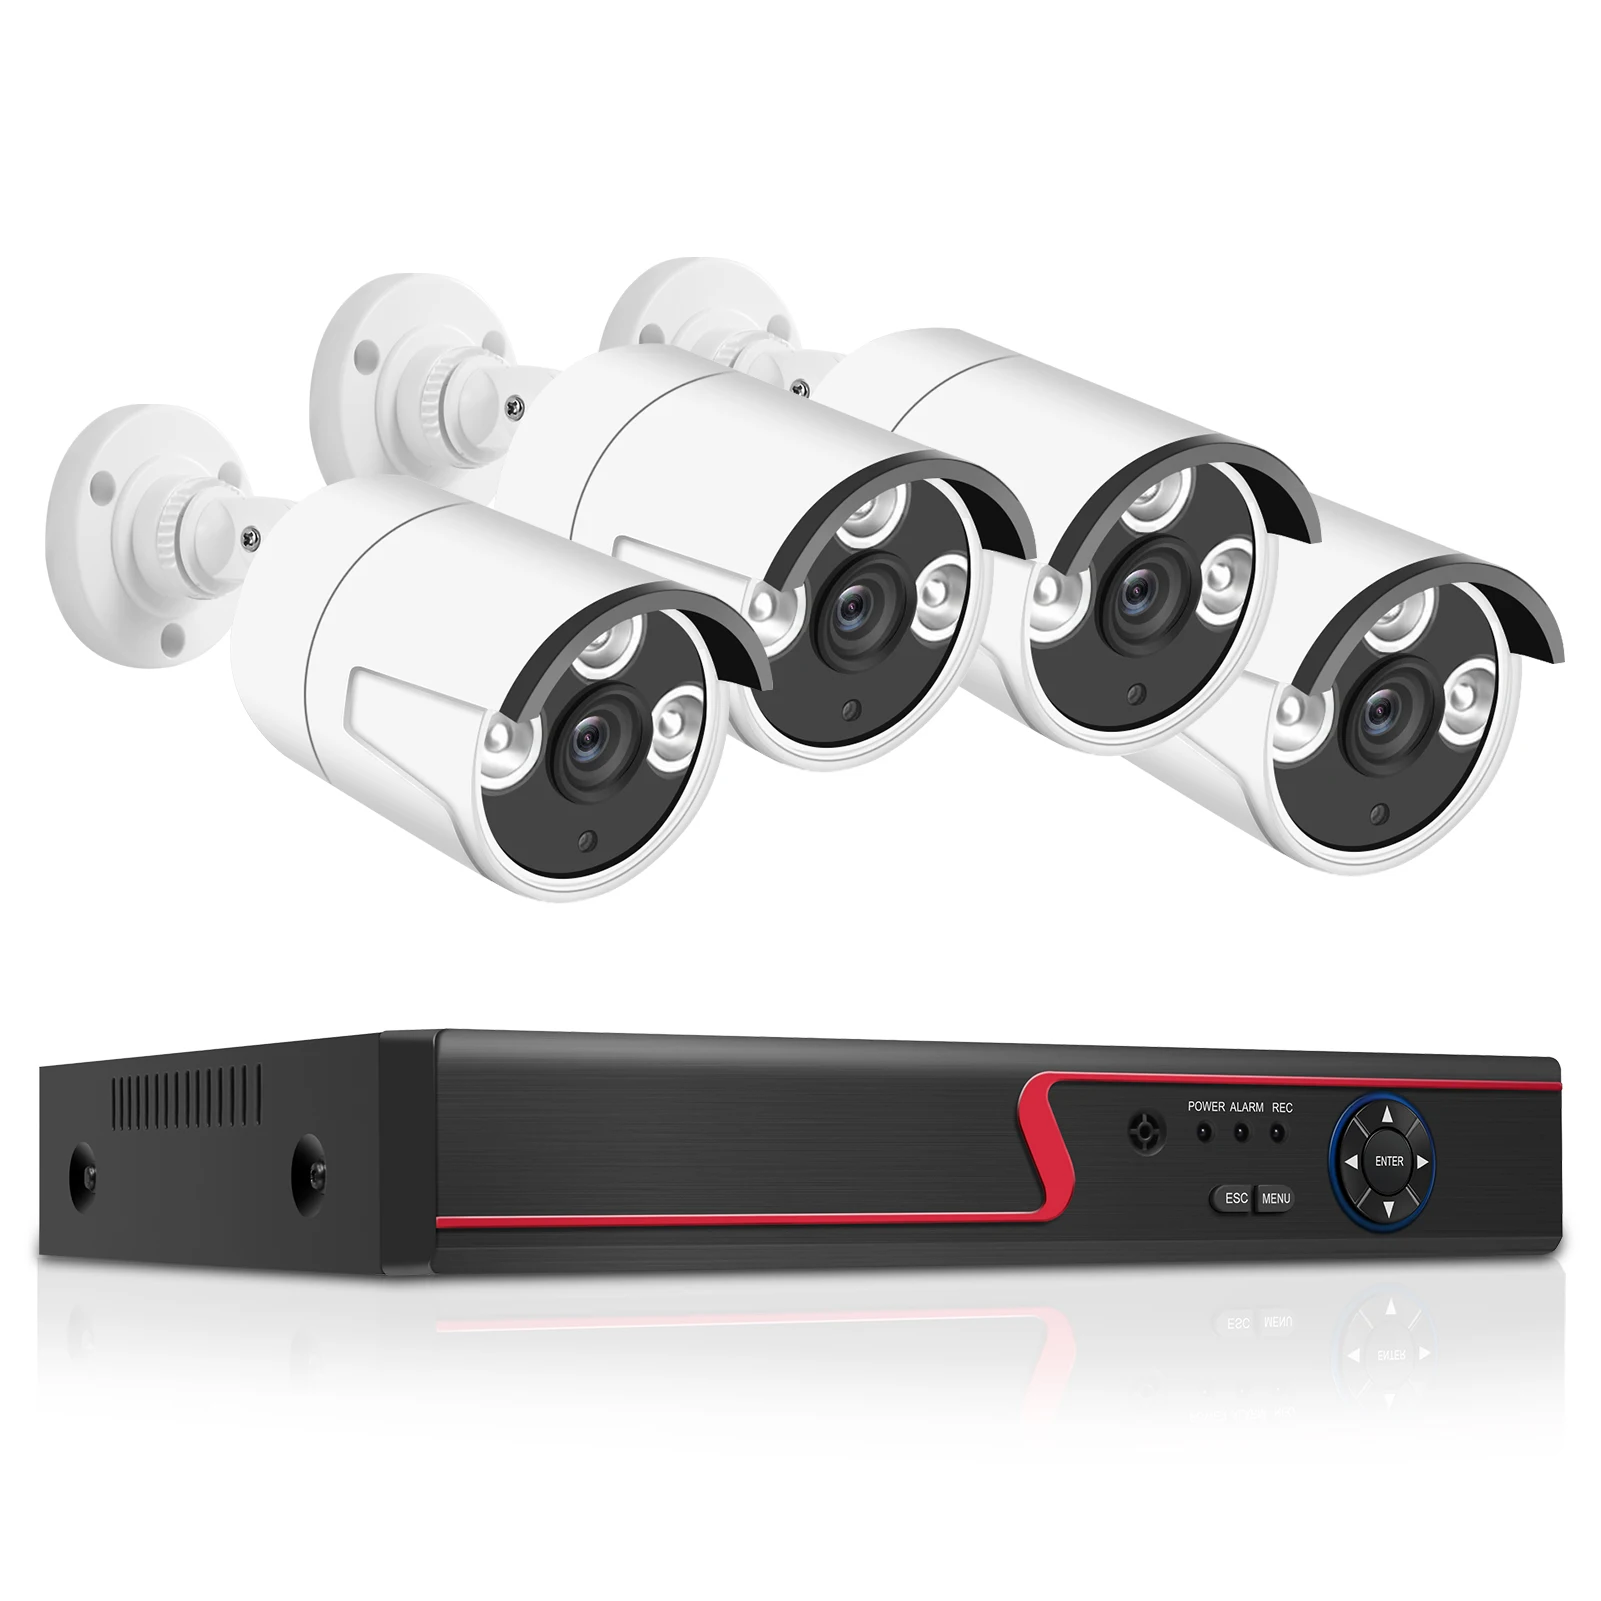 

Система безопасности 1080P + 4 уличных камеры видеонаблюдения с поддержкой ночного видения, предупреждения о движении, удаленный доступ